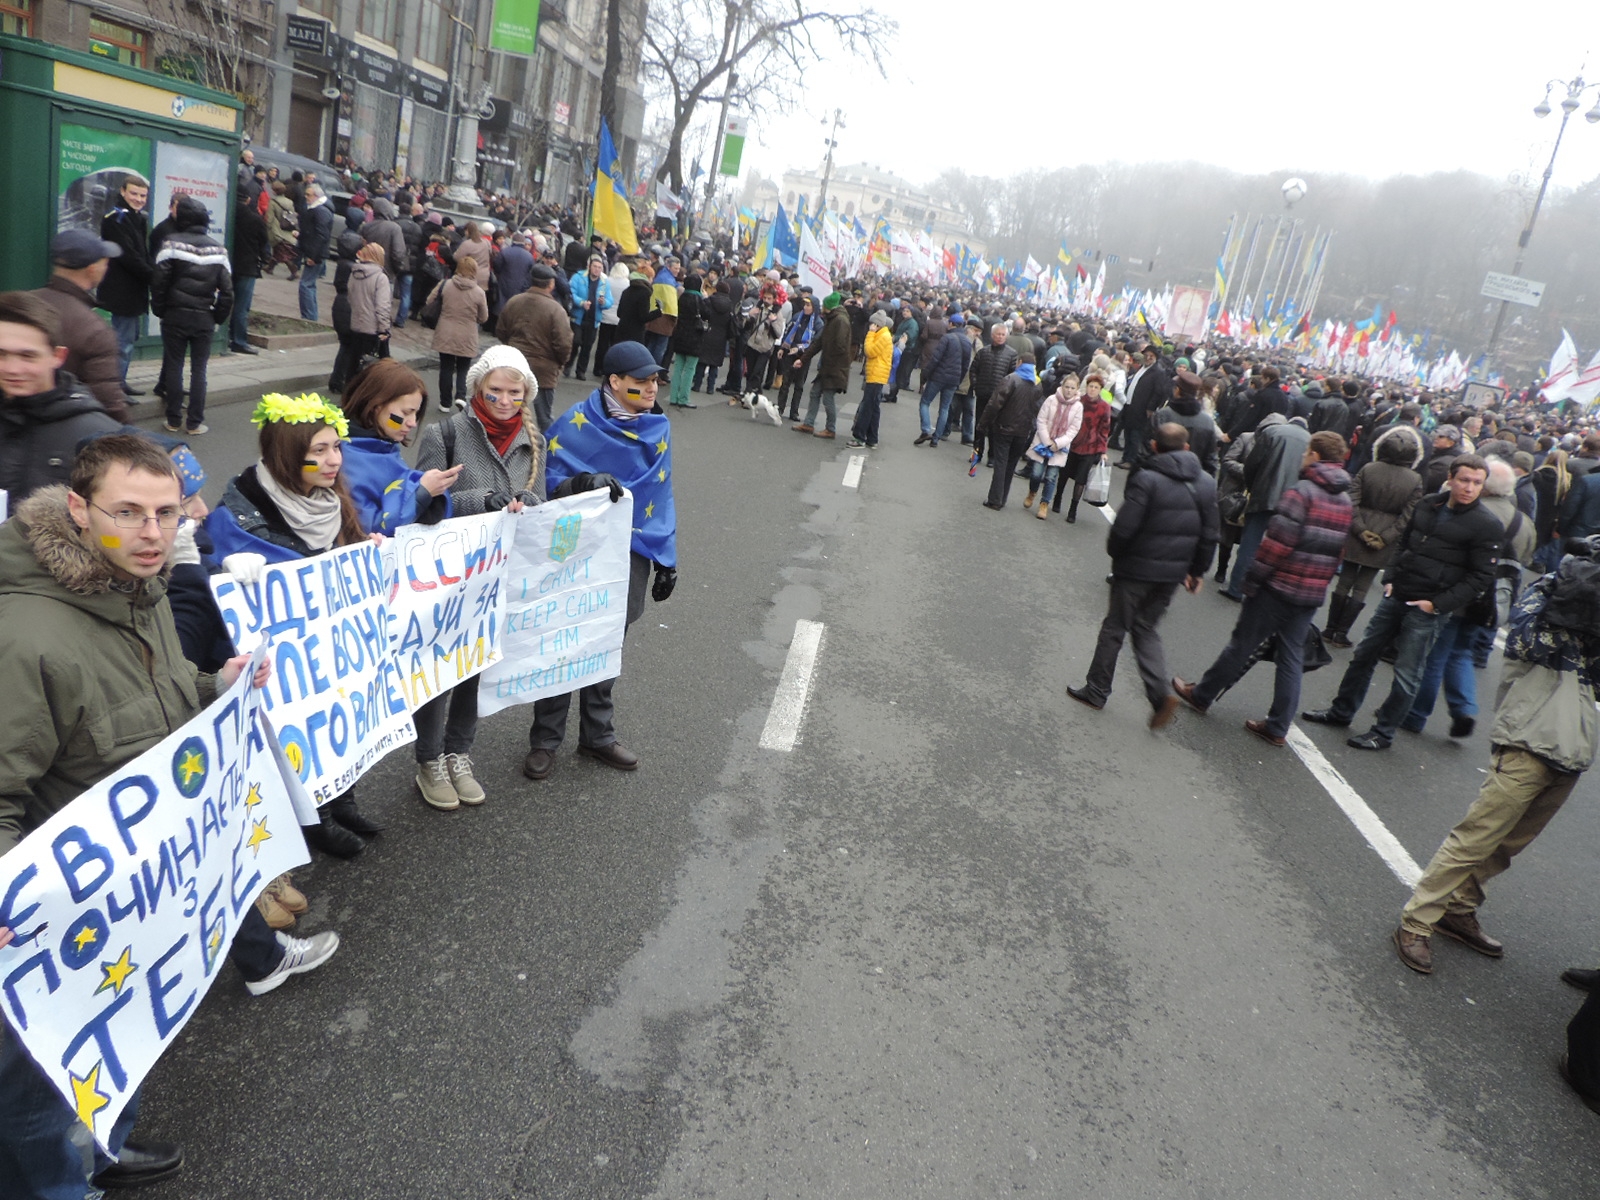 První dny Euromajdanu, listopad 2013 – před summitem ve Vilniusu. Studenti vyzývají zůstávat se na Chreščatyku. Ptal jsem se je – proč? Odpověděli: „protože do Evropy patříme, byli jsme tam na studijních pobytech, výletech, viděli jak tam věci fungují, měli bychom to mít podobně“. Tehdy ještě Majdan byl rozdělen na akci politickou (a také svobodu Julie Tymošenkové) a bez politiků, nicméně atmosféra byla velice poklidná a optimistická.